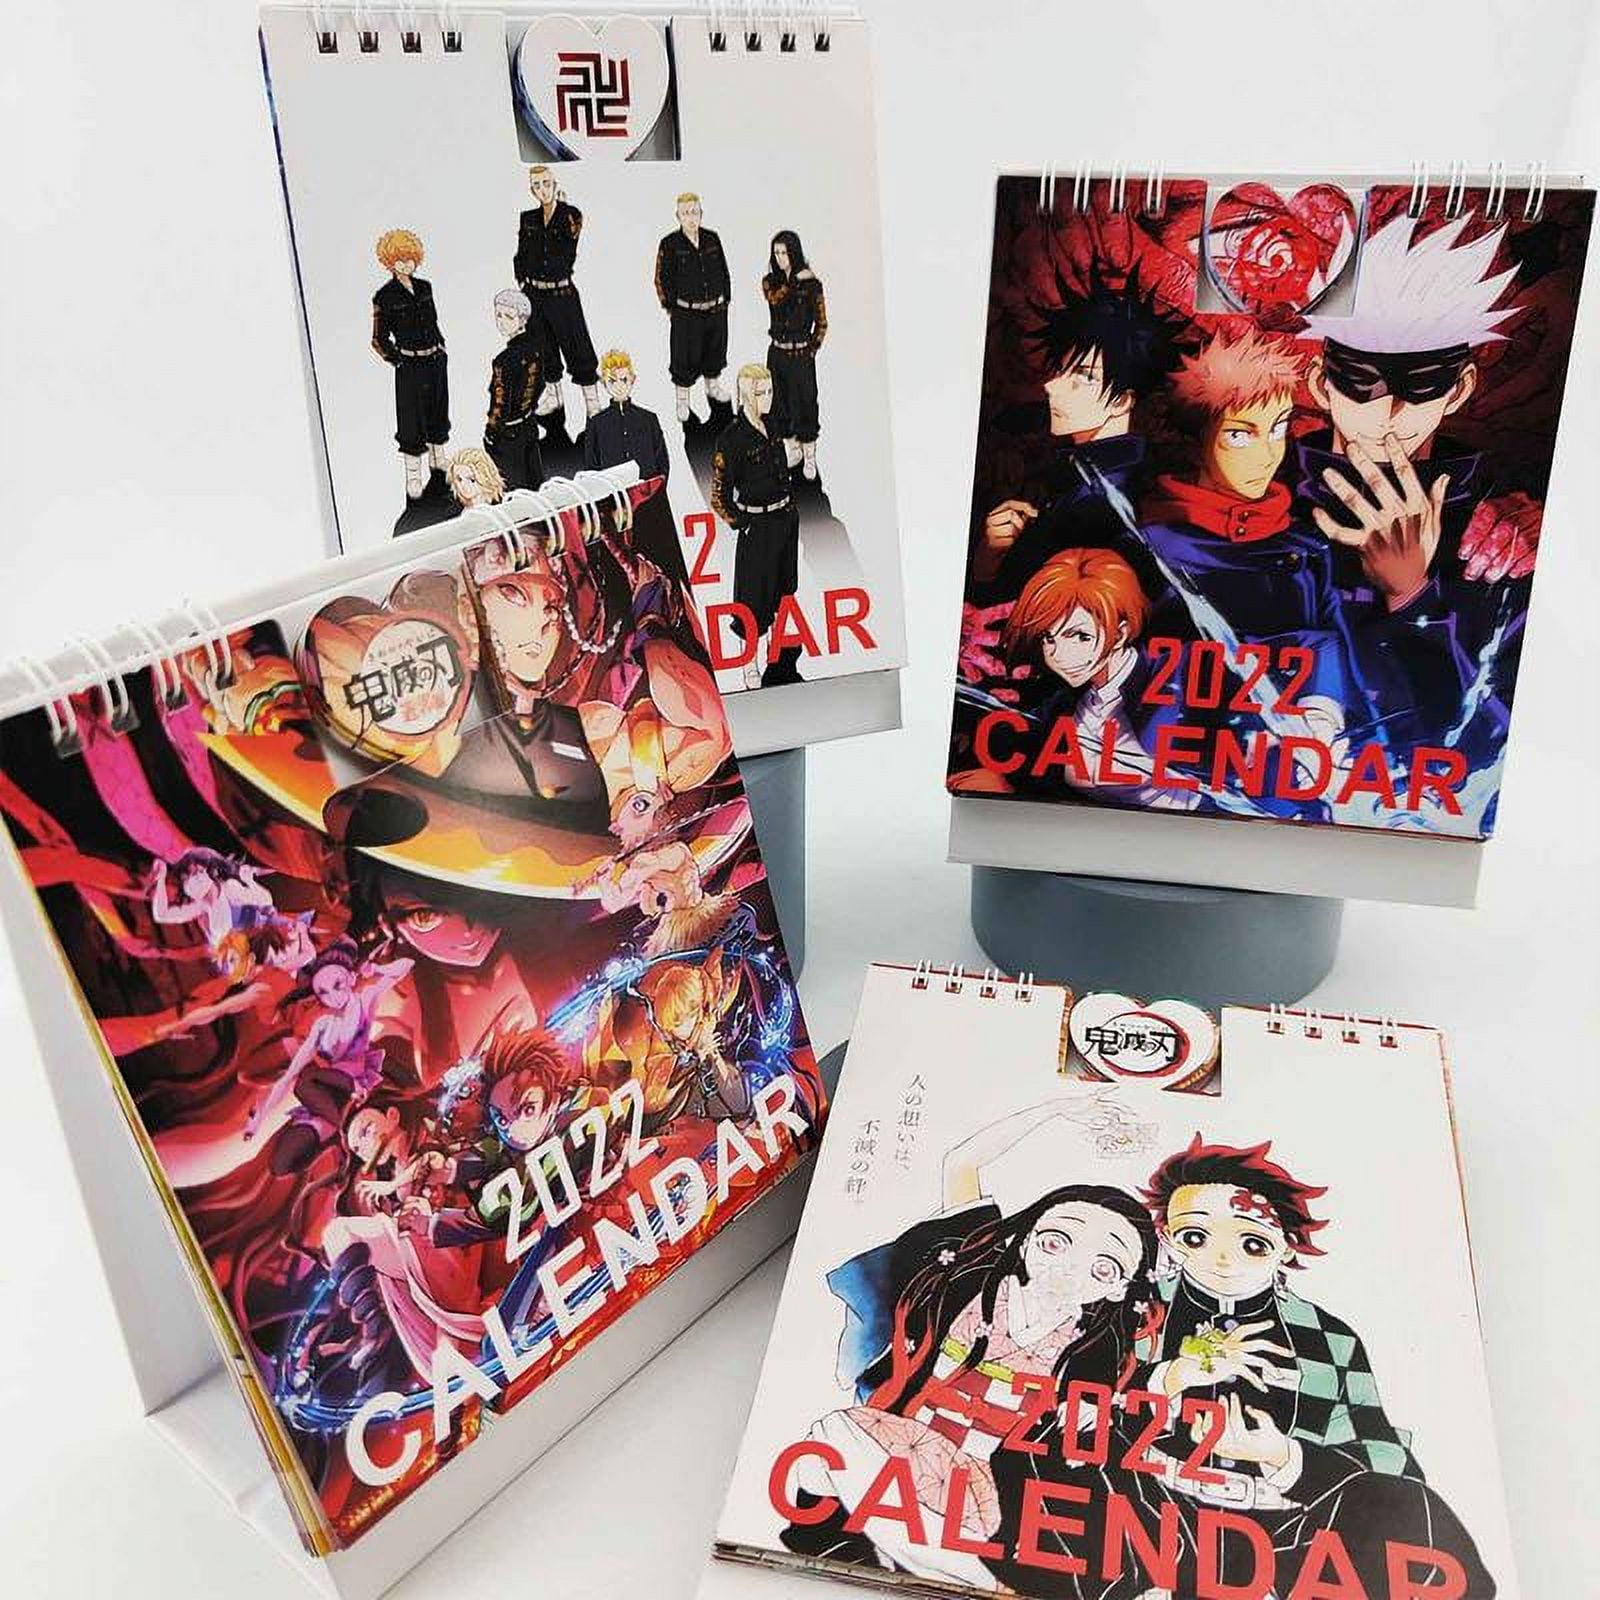  Bleạch 2022 Calendar: OFFICIAL 2022 Calendar - Anime Manga  Calendar 2022-2023, Calendar Planner - Kalendar calendario calendrier 18  monthly (Anime  Supplies) - January 2022 to December 2023.3:  9798414284956: Calendar, Bleach: Books